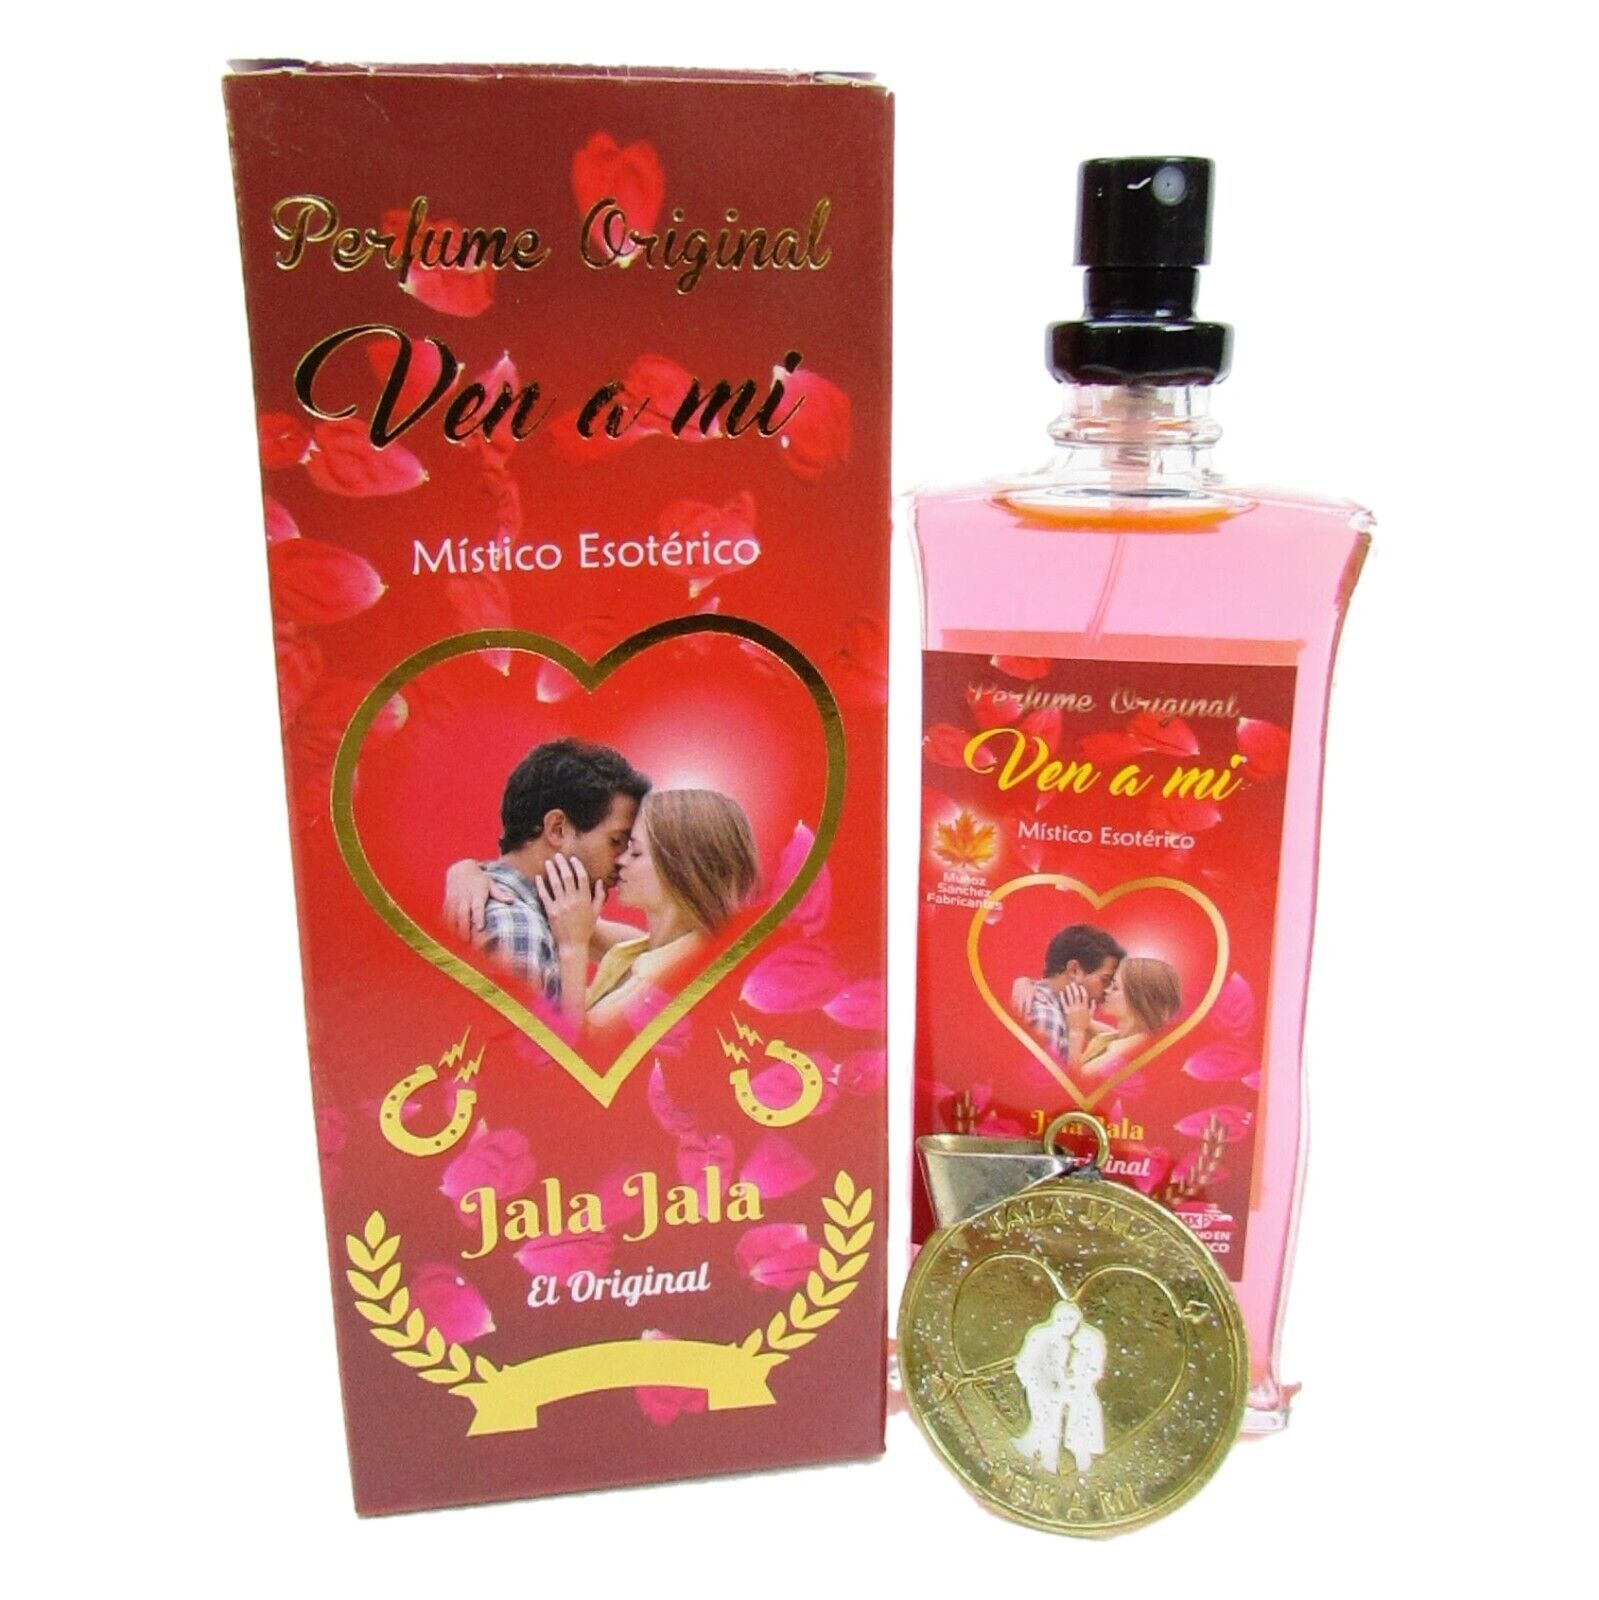 Ven A Mi Perfume Original con Talisman / Come To Me Authentic Perfume w/Talisman